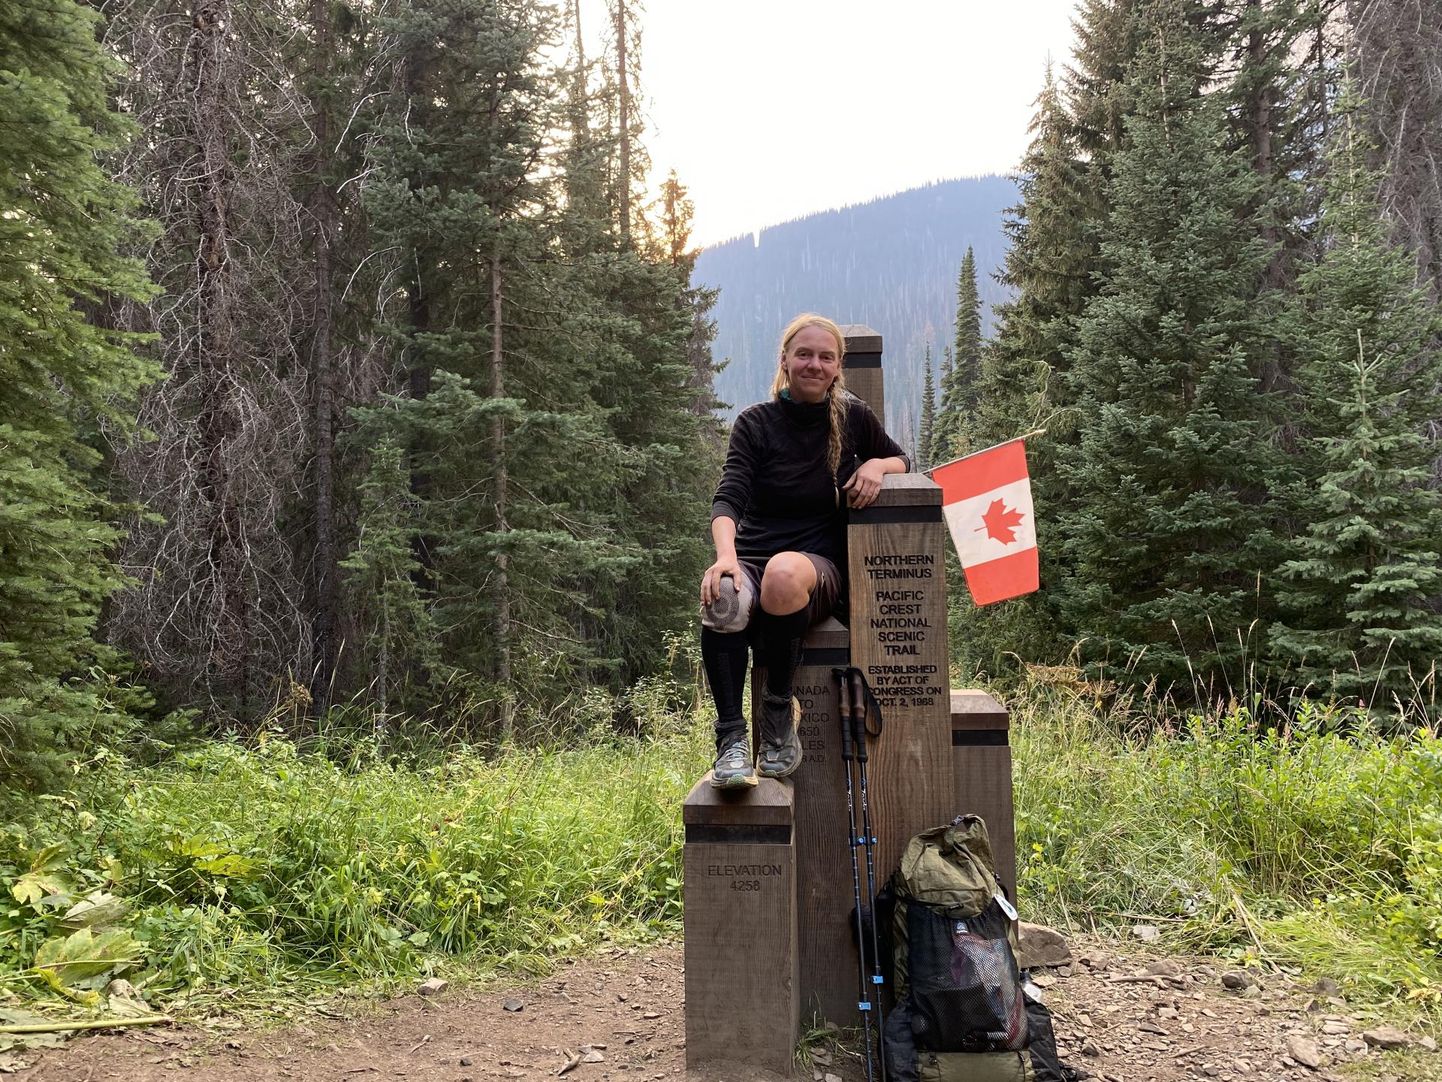 Pacific Crest Traili lõppu Kanada piiril märgib Northern Terminuse monument, kus matka läbikäinutel on kombeks lõpupilt teha. Janika Tamm tegi seal küll pildi ära, aga pidi siis pöörduma tagasi raja selle osa juurde, mis varem metsatulekahju tõttu vahele jäi.